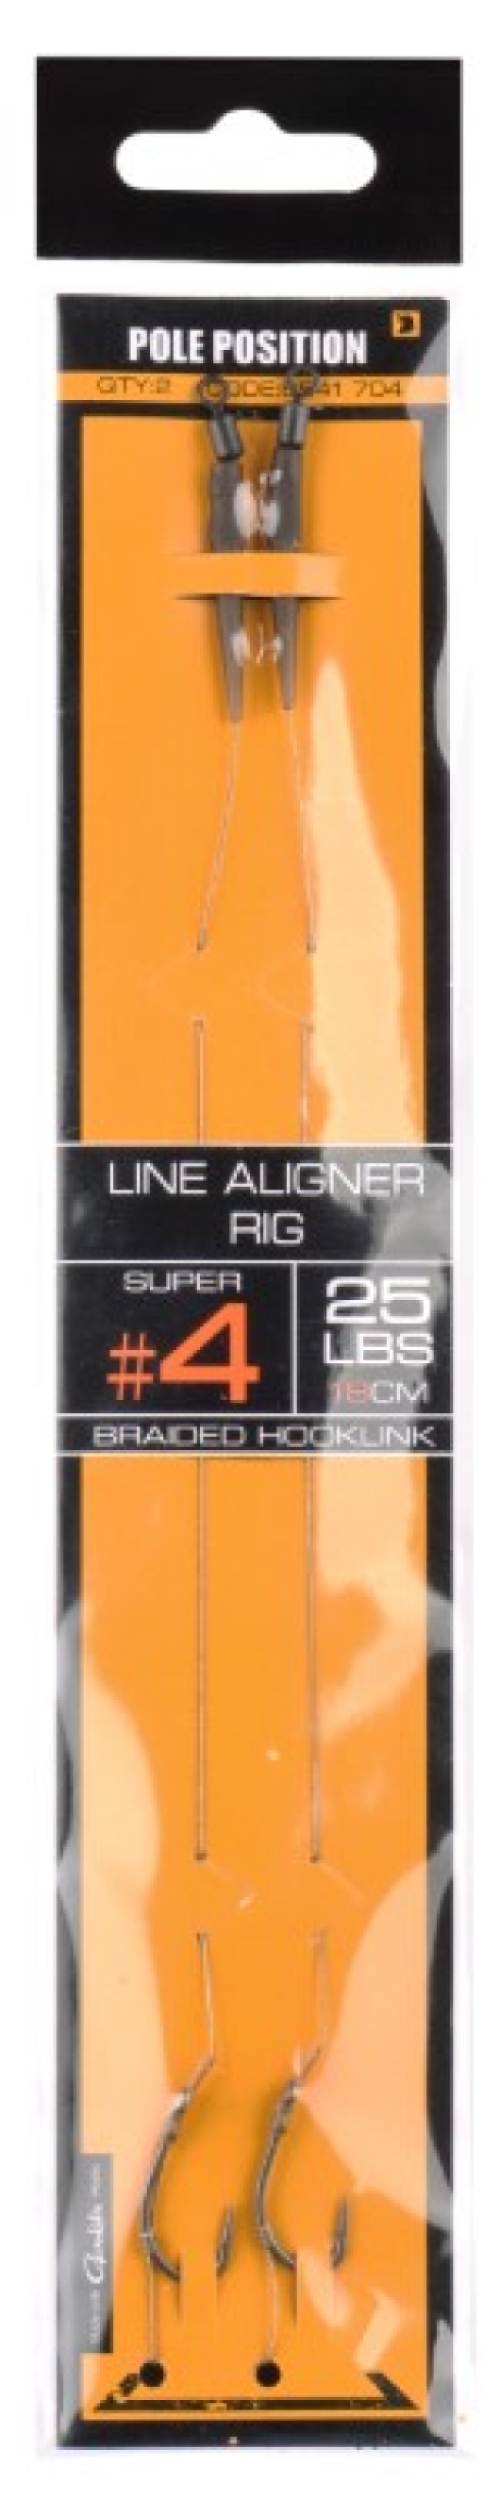 Pole Position Line Aligner Rig